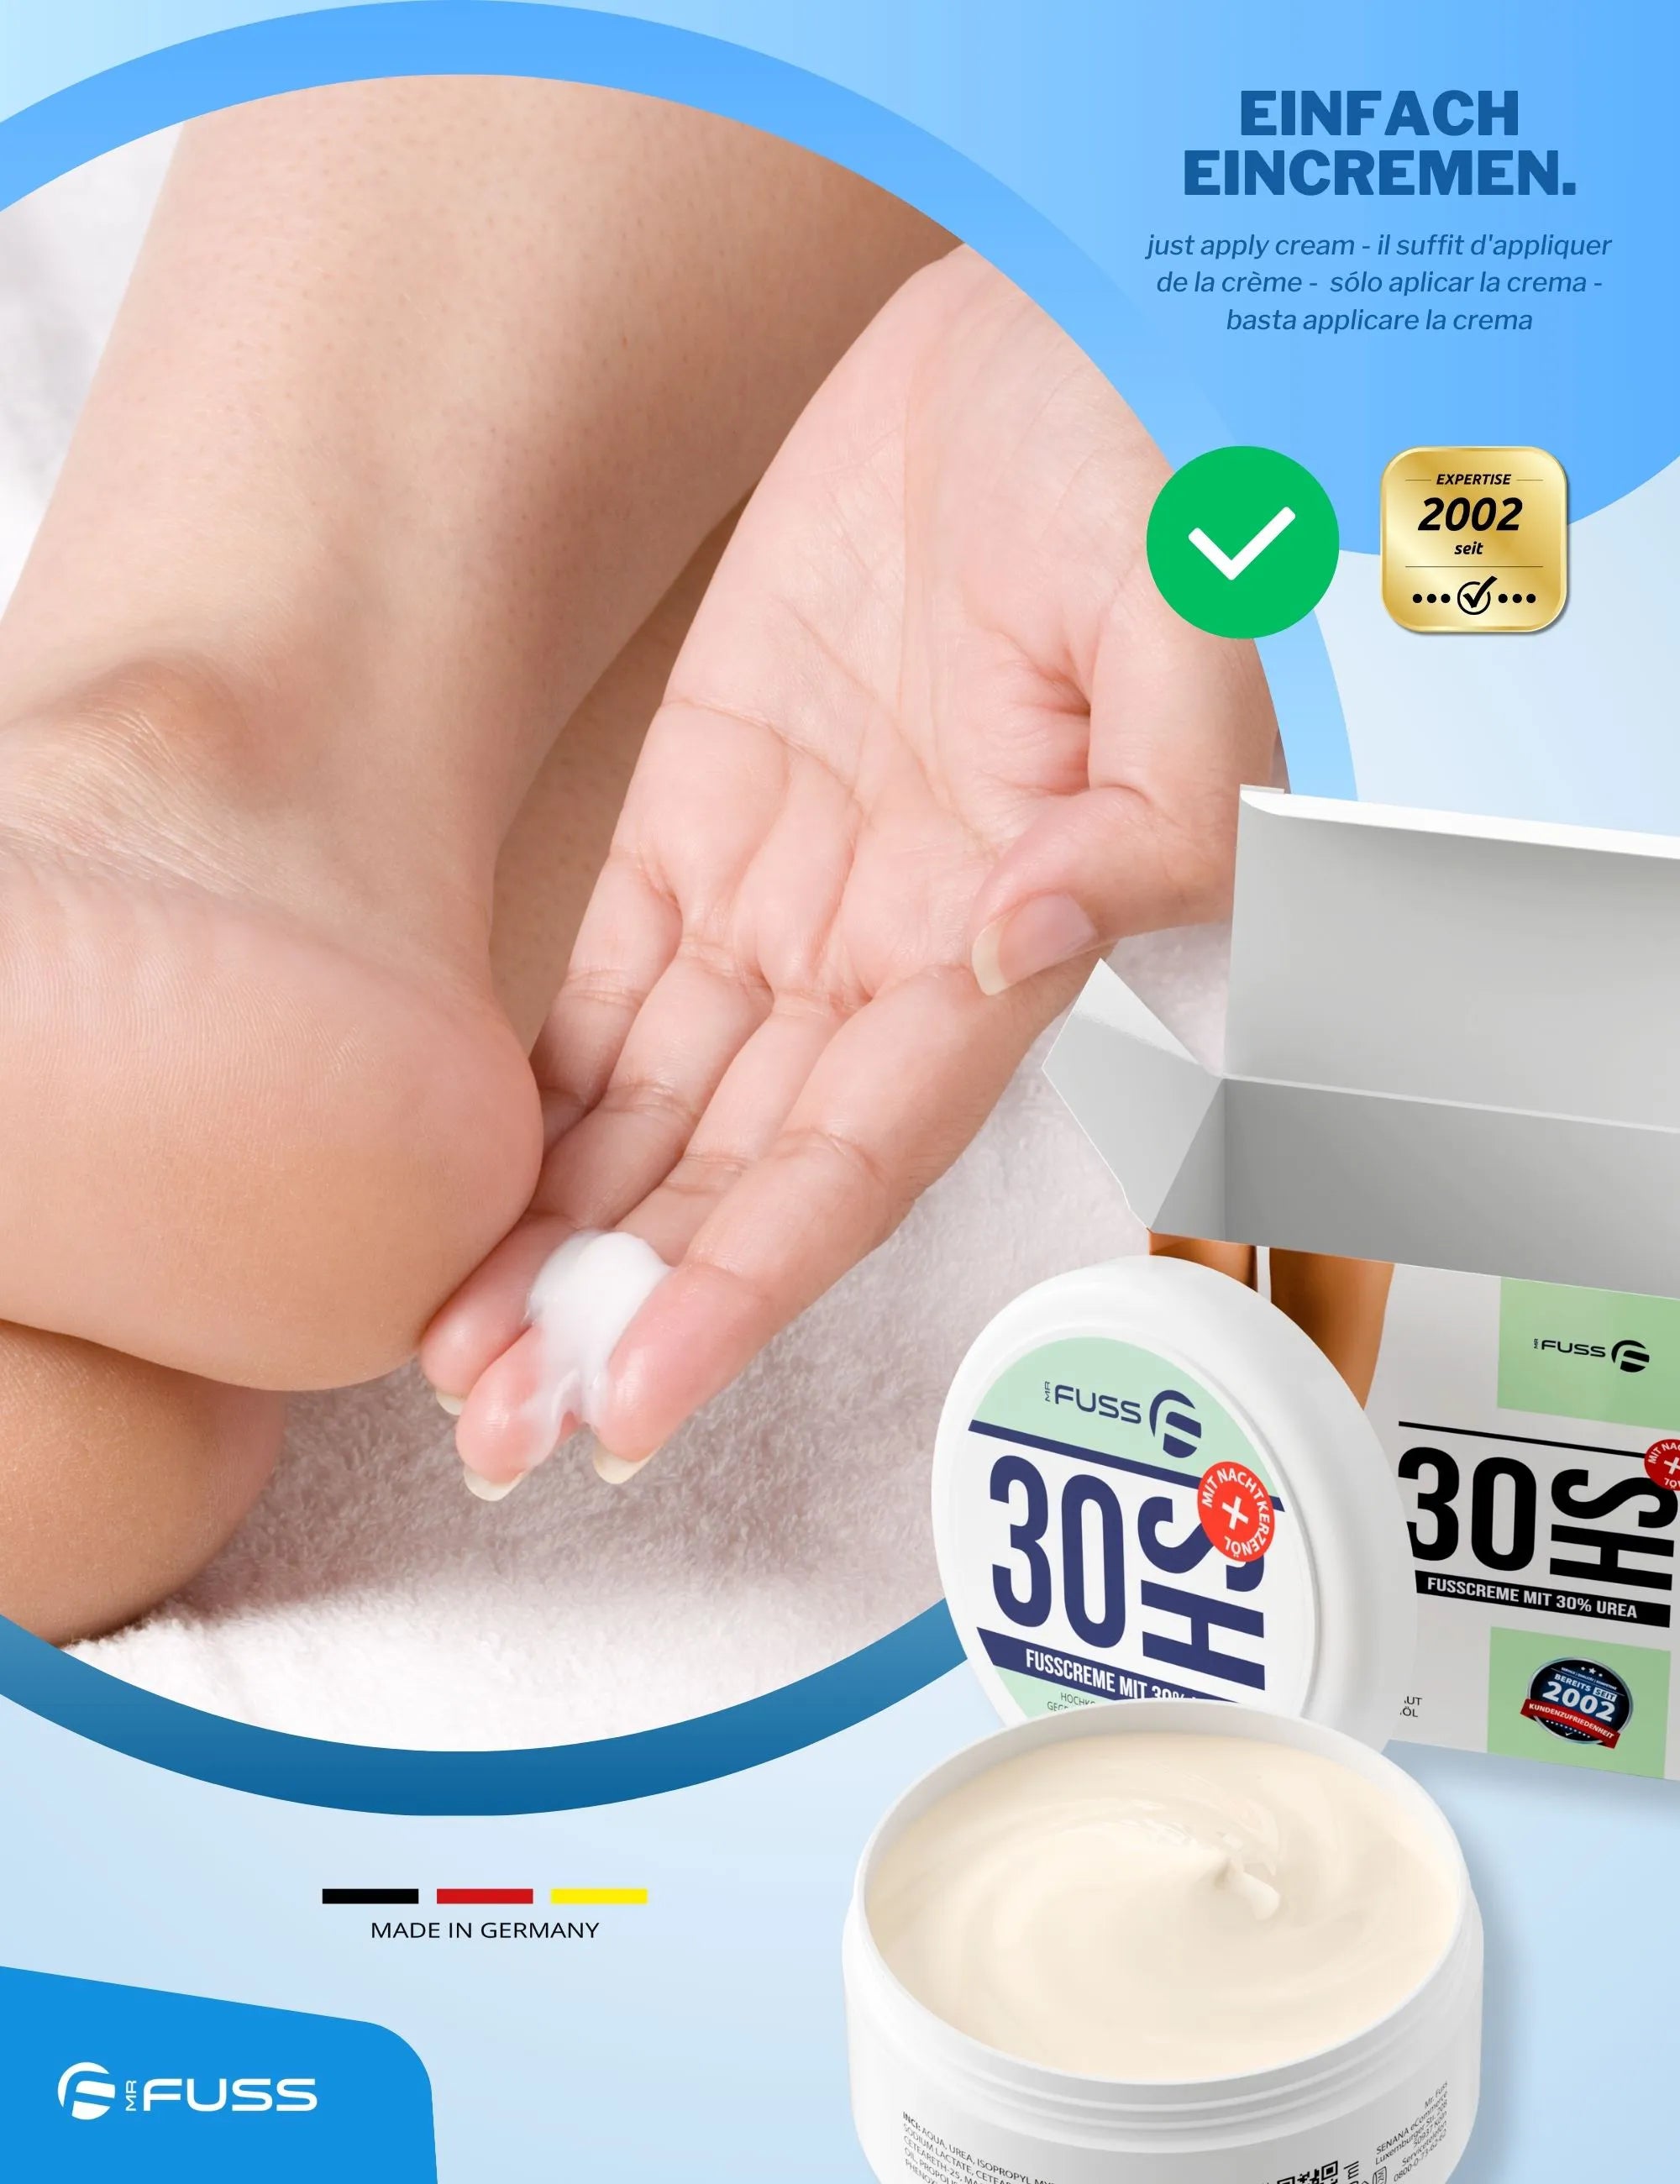 30HS - Crema per i piedi con 30% di urea - 200ml